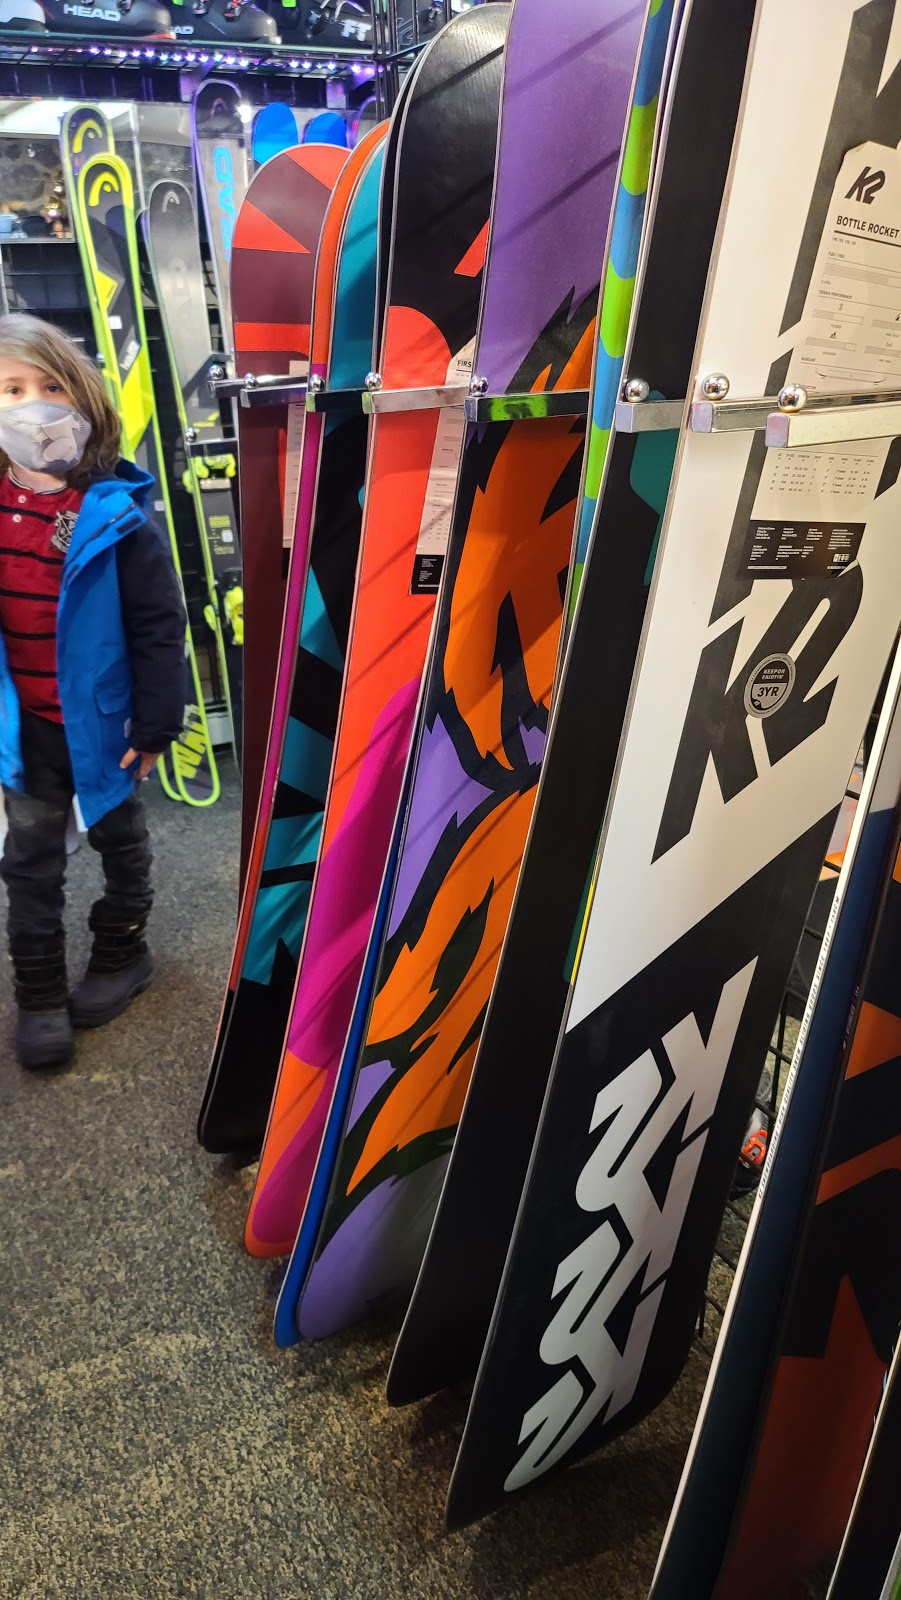 Razor Tune Ski and Snowboard Shop | 3520 Paterson Hamburg Turnpike, Oak Ridge, NJ 07438 | Phone: (973) 697-2100